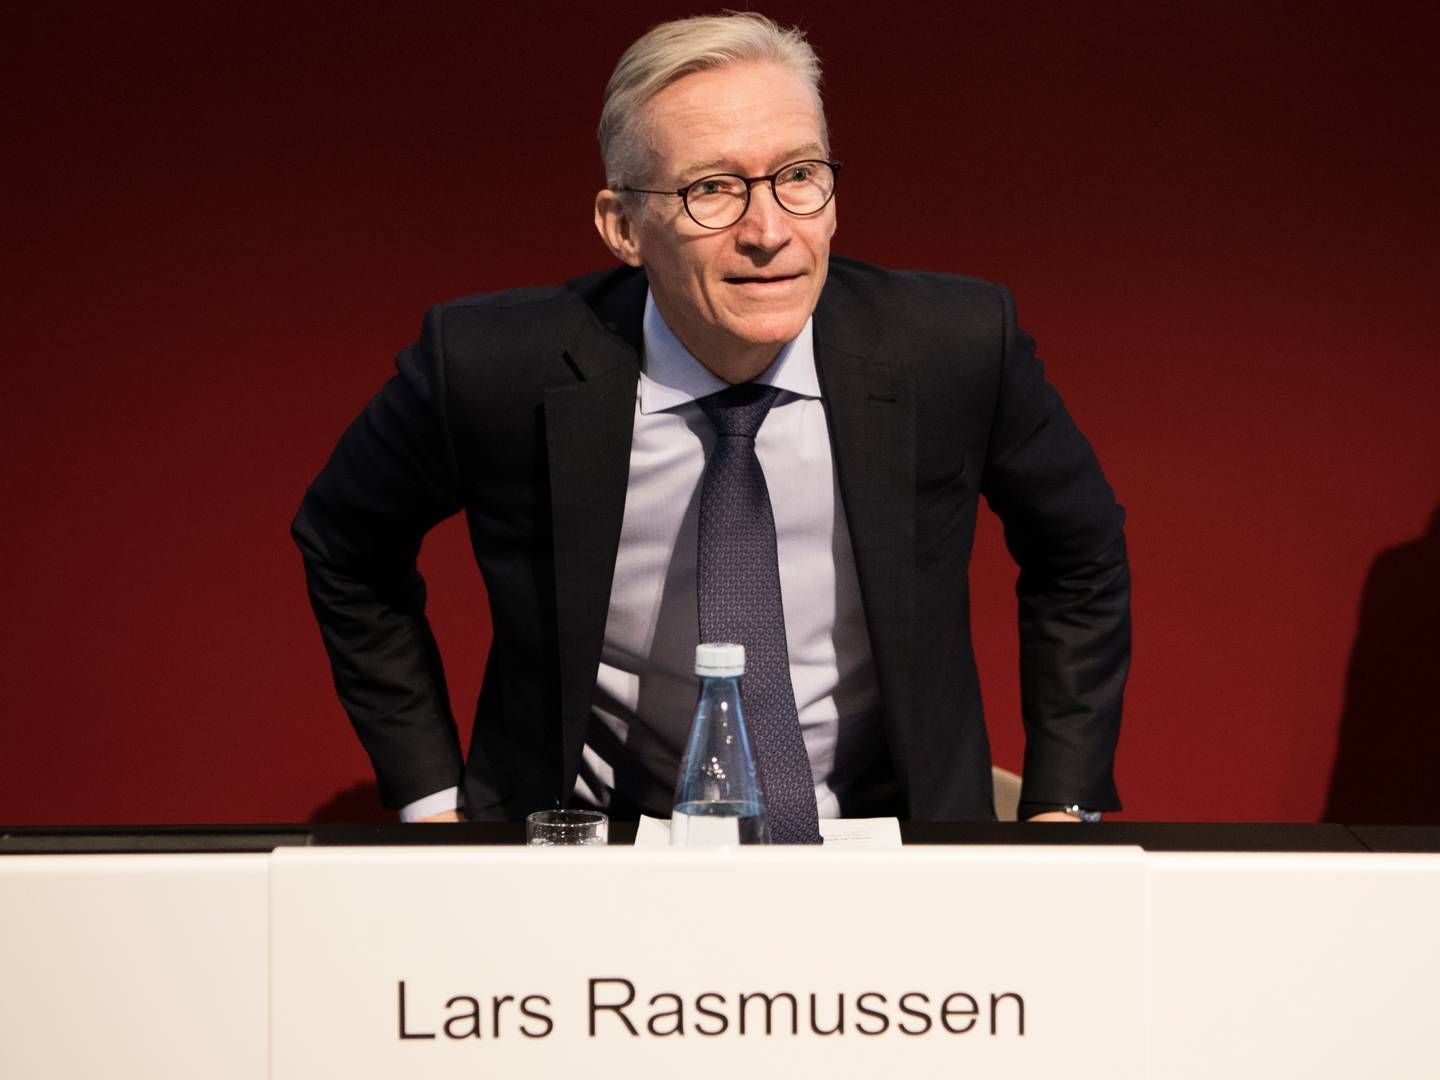 Lars Rasmussen blevfor første gang nomineret til valg til Lundbecks bestyrelse i 2013. | Foto: Gregers Tycho